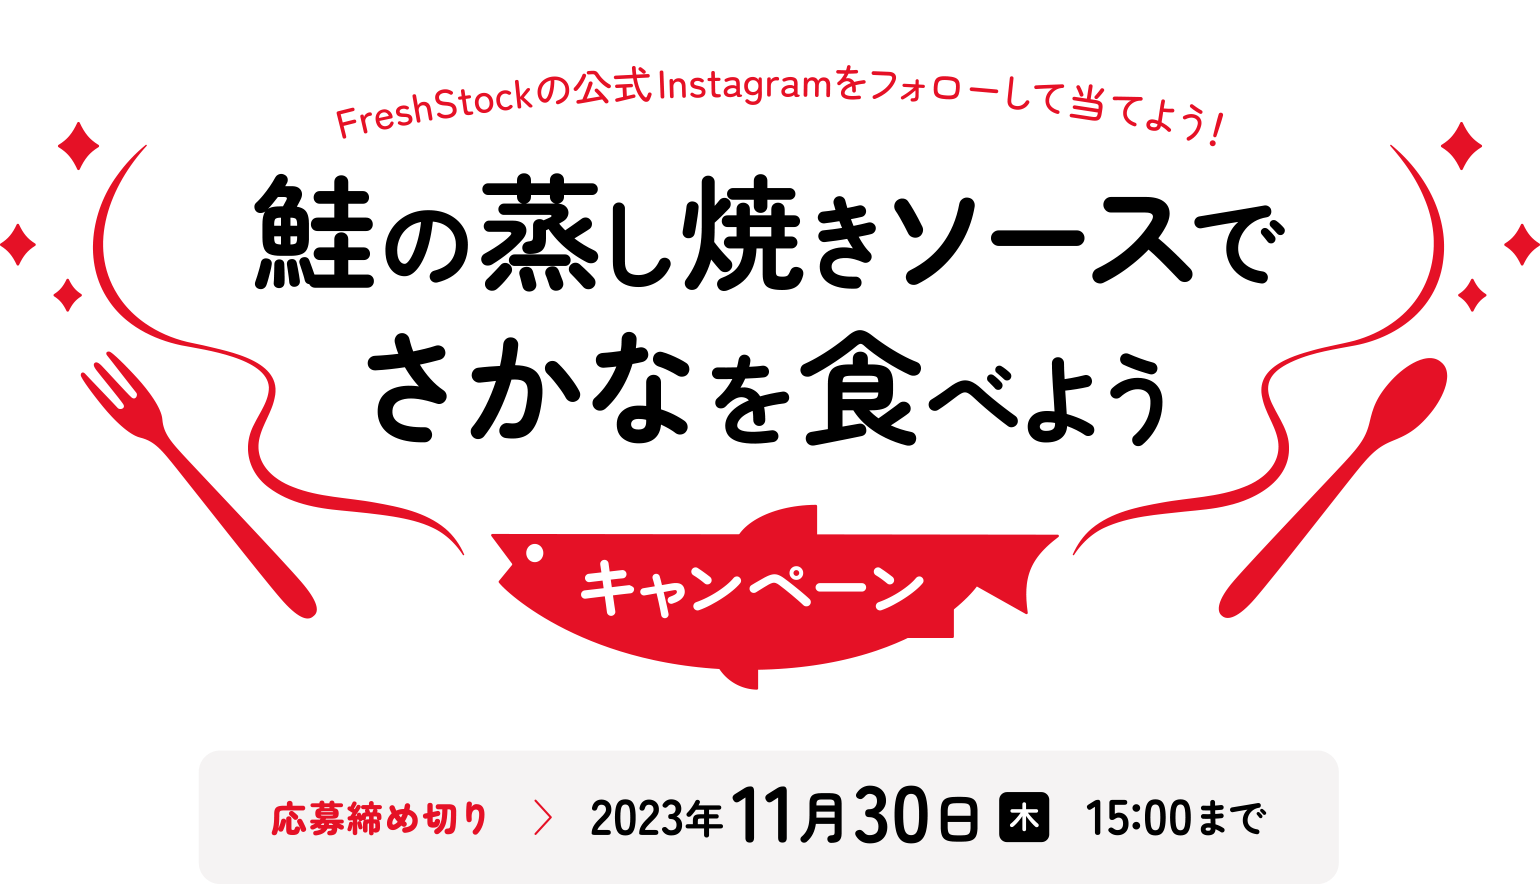 FreshStockの公式Instagramをフォローして当てよう！ 鮭の蒸し焼きソースでさかなを食べようキャンペーン　応募締め切り：2023年11月30日（木）15:00まで